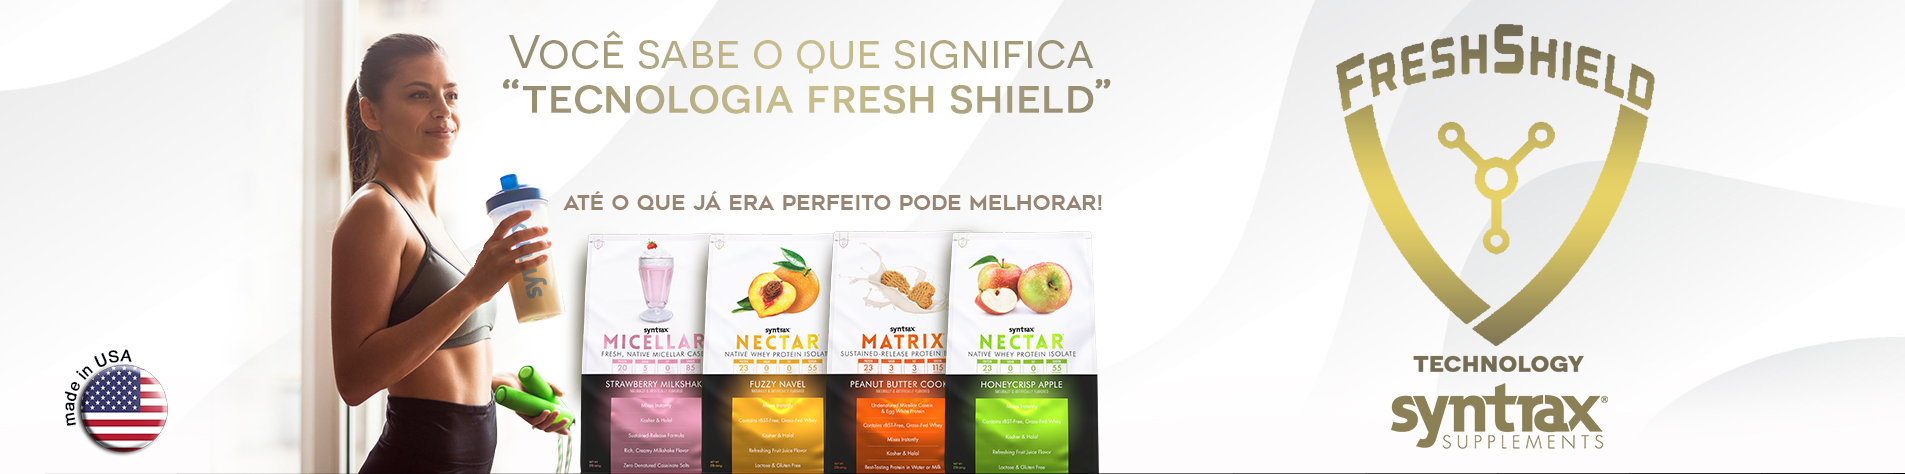 FreshShield - Nova embalagem